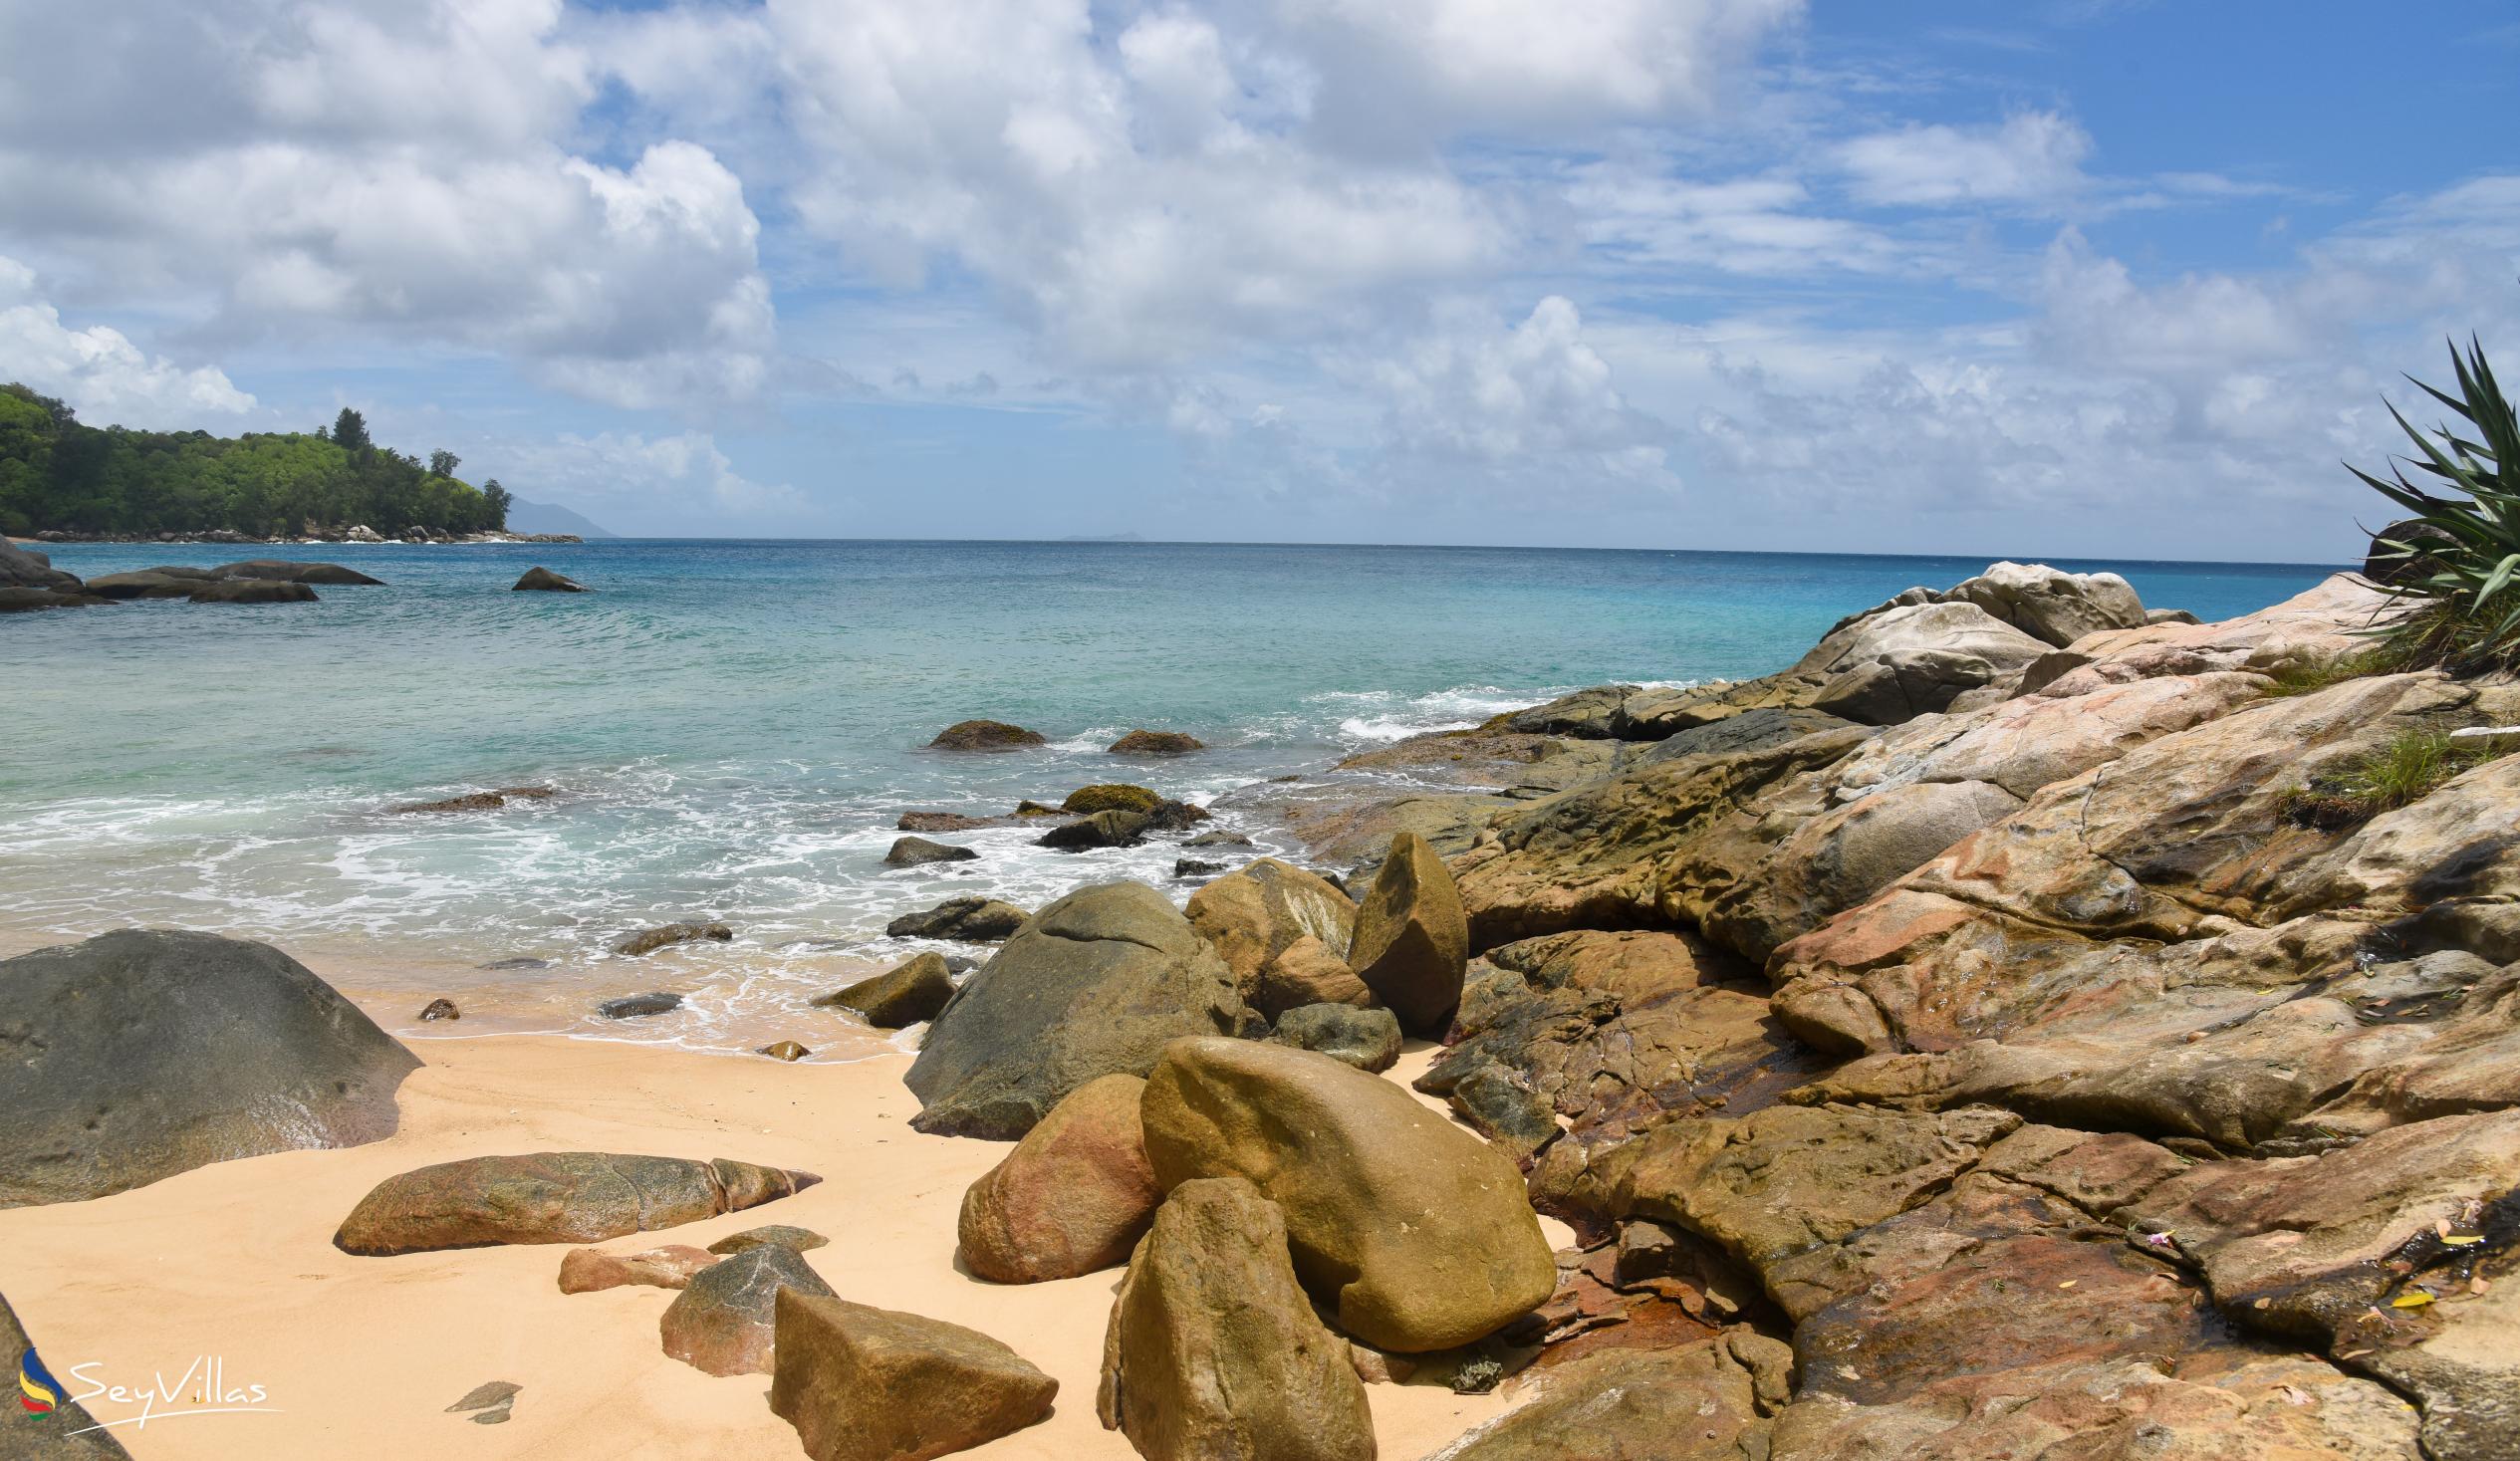 Photo 18: Anse Machabée - Mahé (Seychelles)